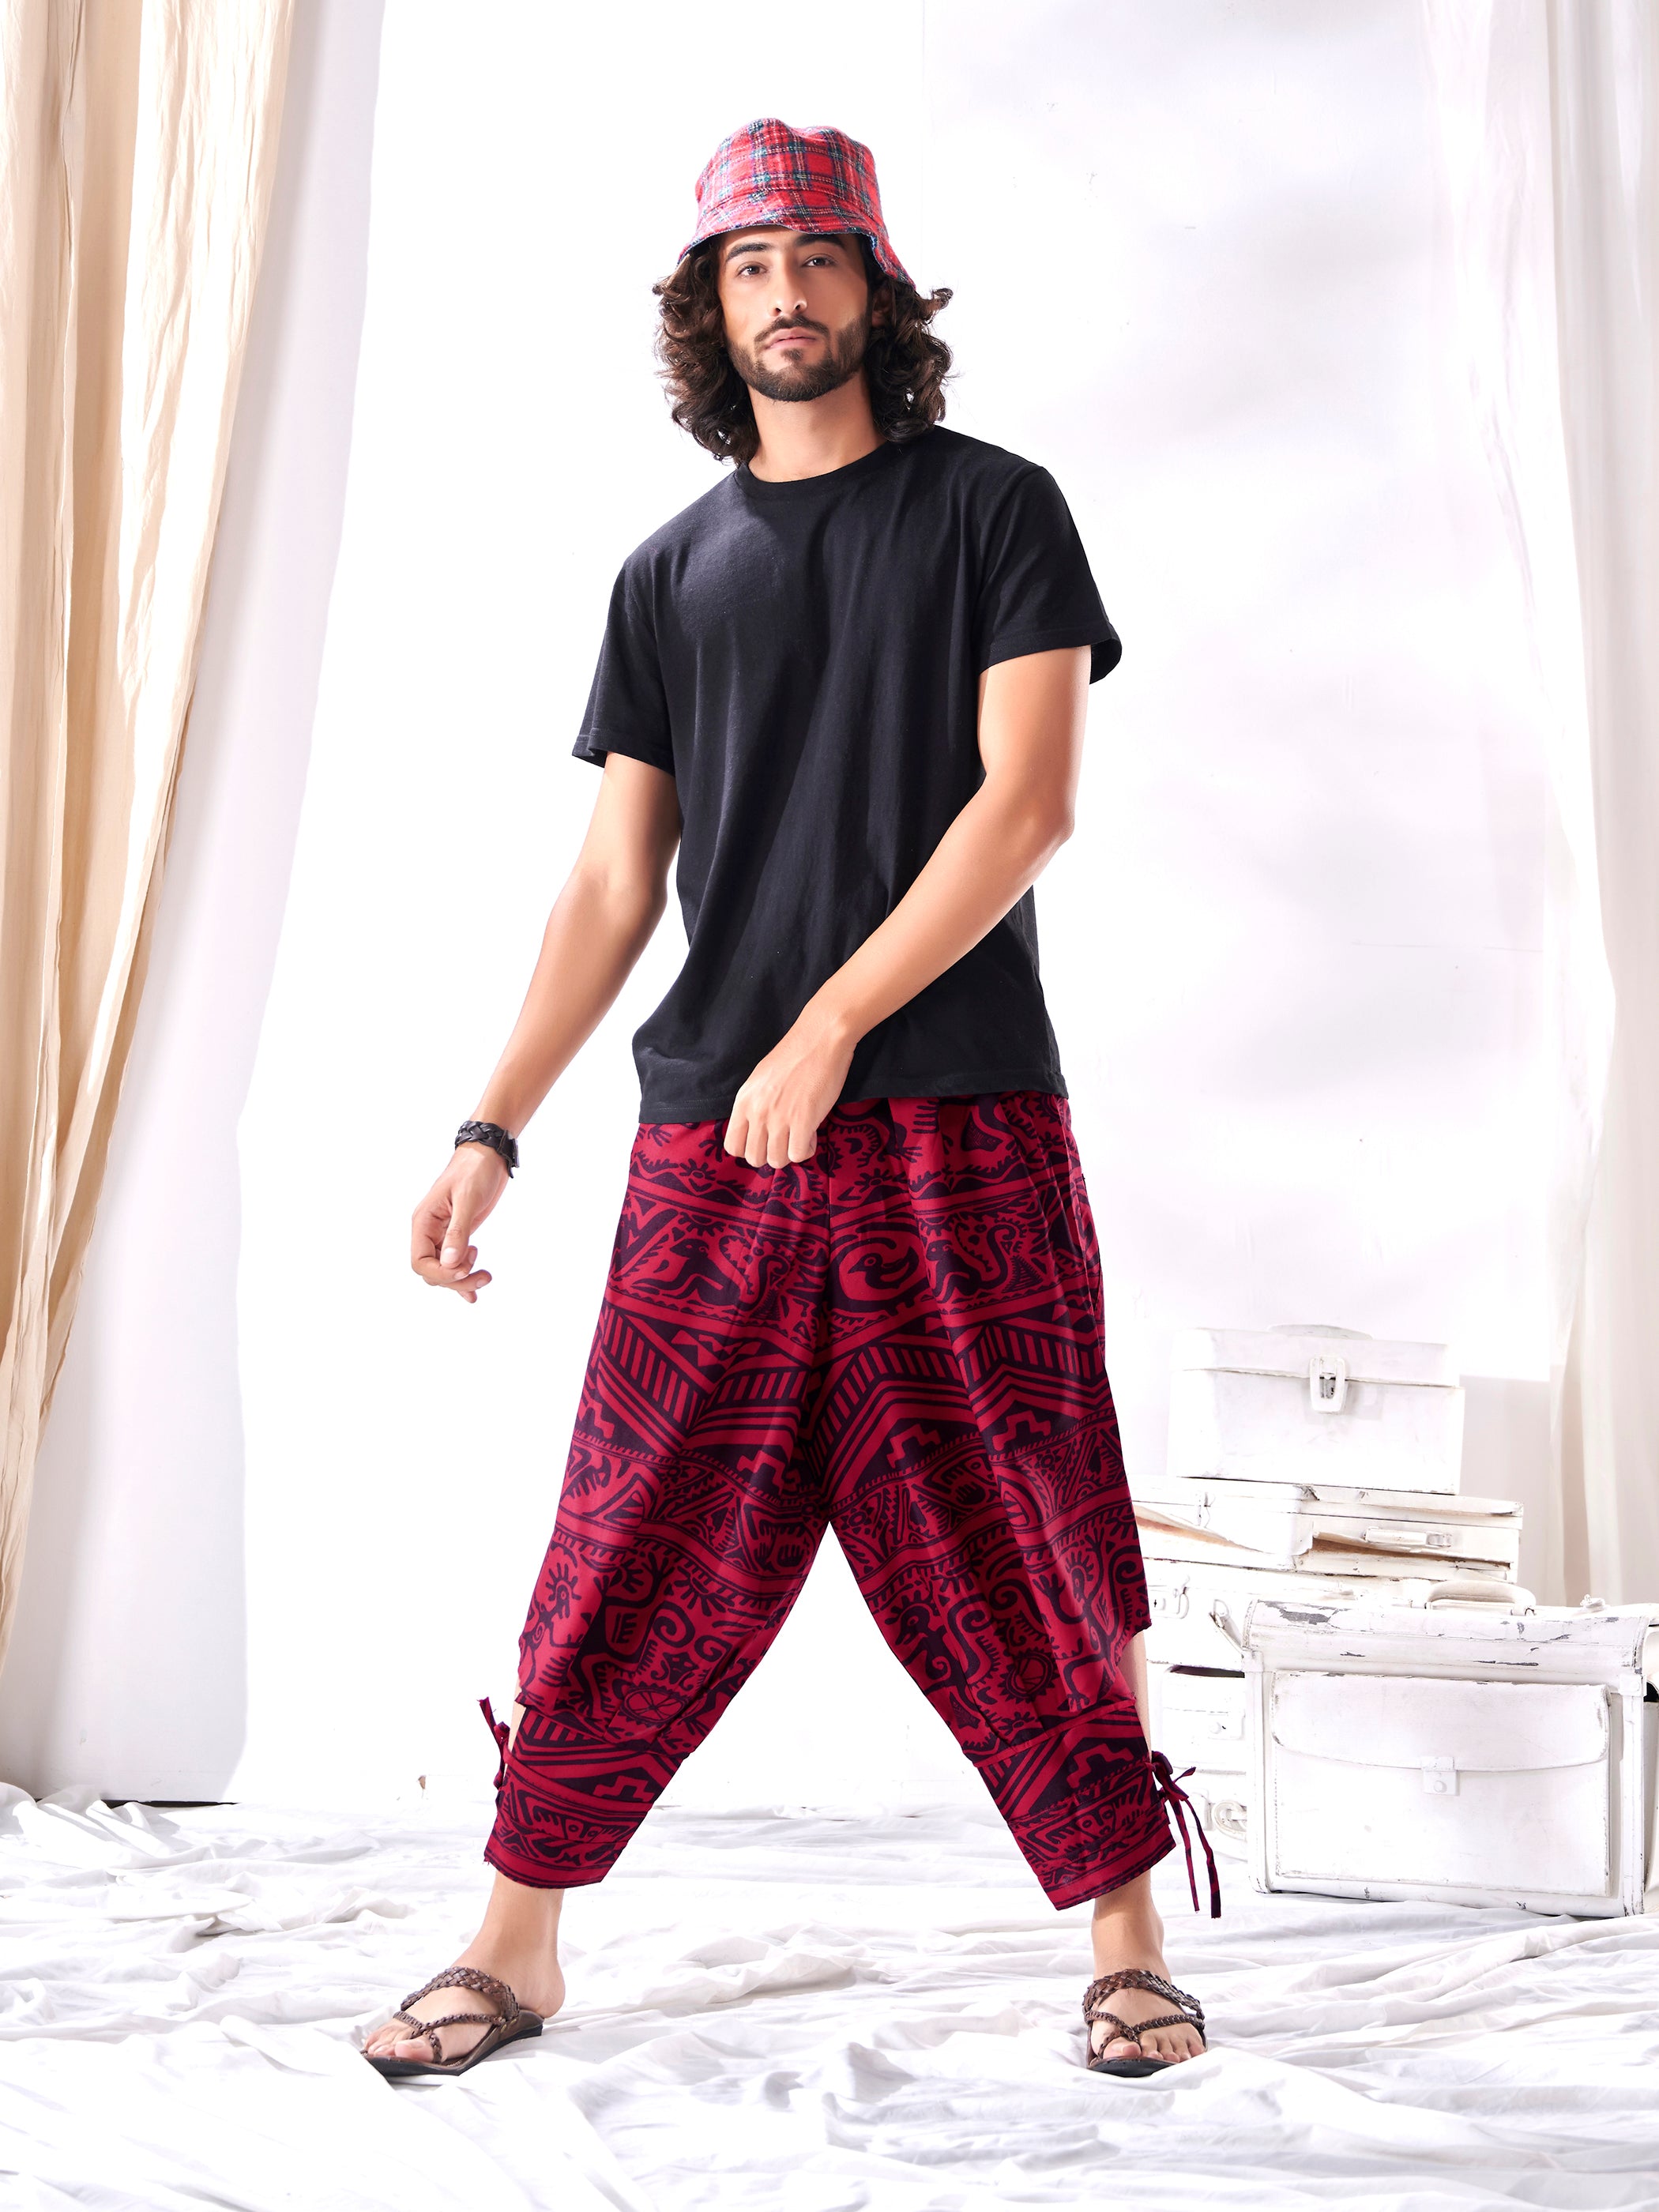 The 12 Best Yoga Pants for Men  Yoga Journal